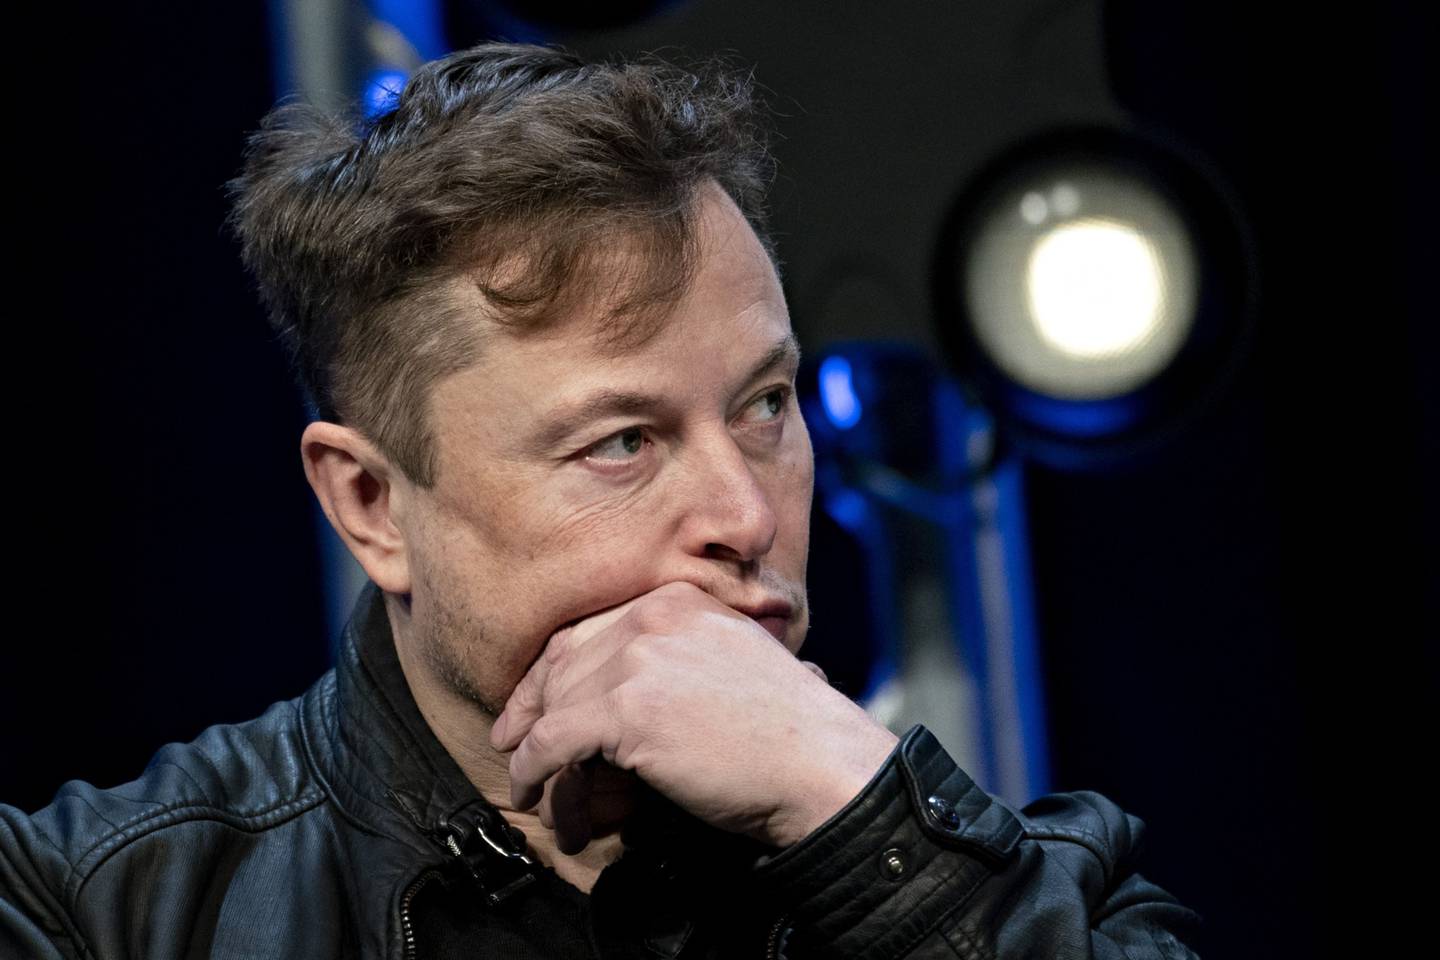 El patrimonio neto de Elon Musk se redujo en US$15.200 millones este viernes, registrando la mayor caída entre los multimillonarios de la tecnología.